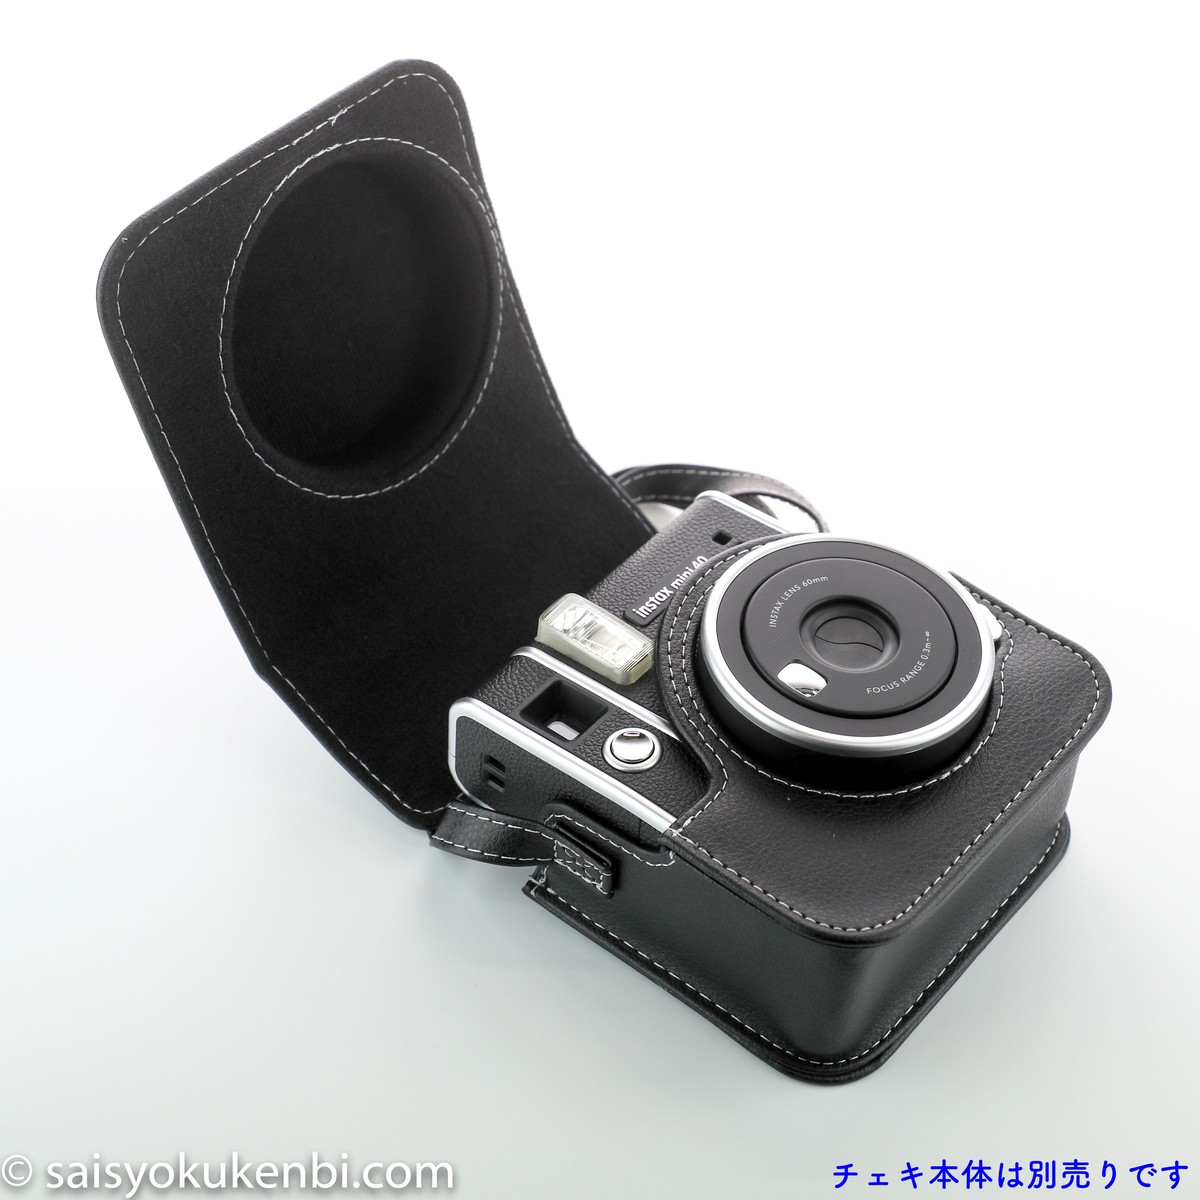 新発売 チェキinstax Mini40 専用カメラケース ショルダーストラップ付き速写ケース ブラック フォトデポ彩色兼美 フィルムカメラ 郵送写真現像のお店